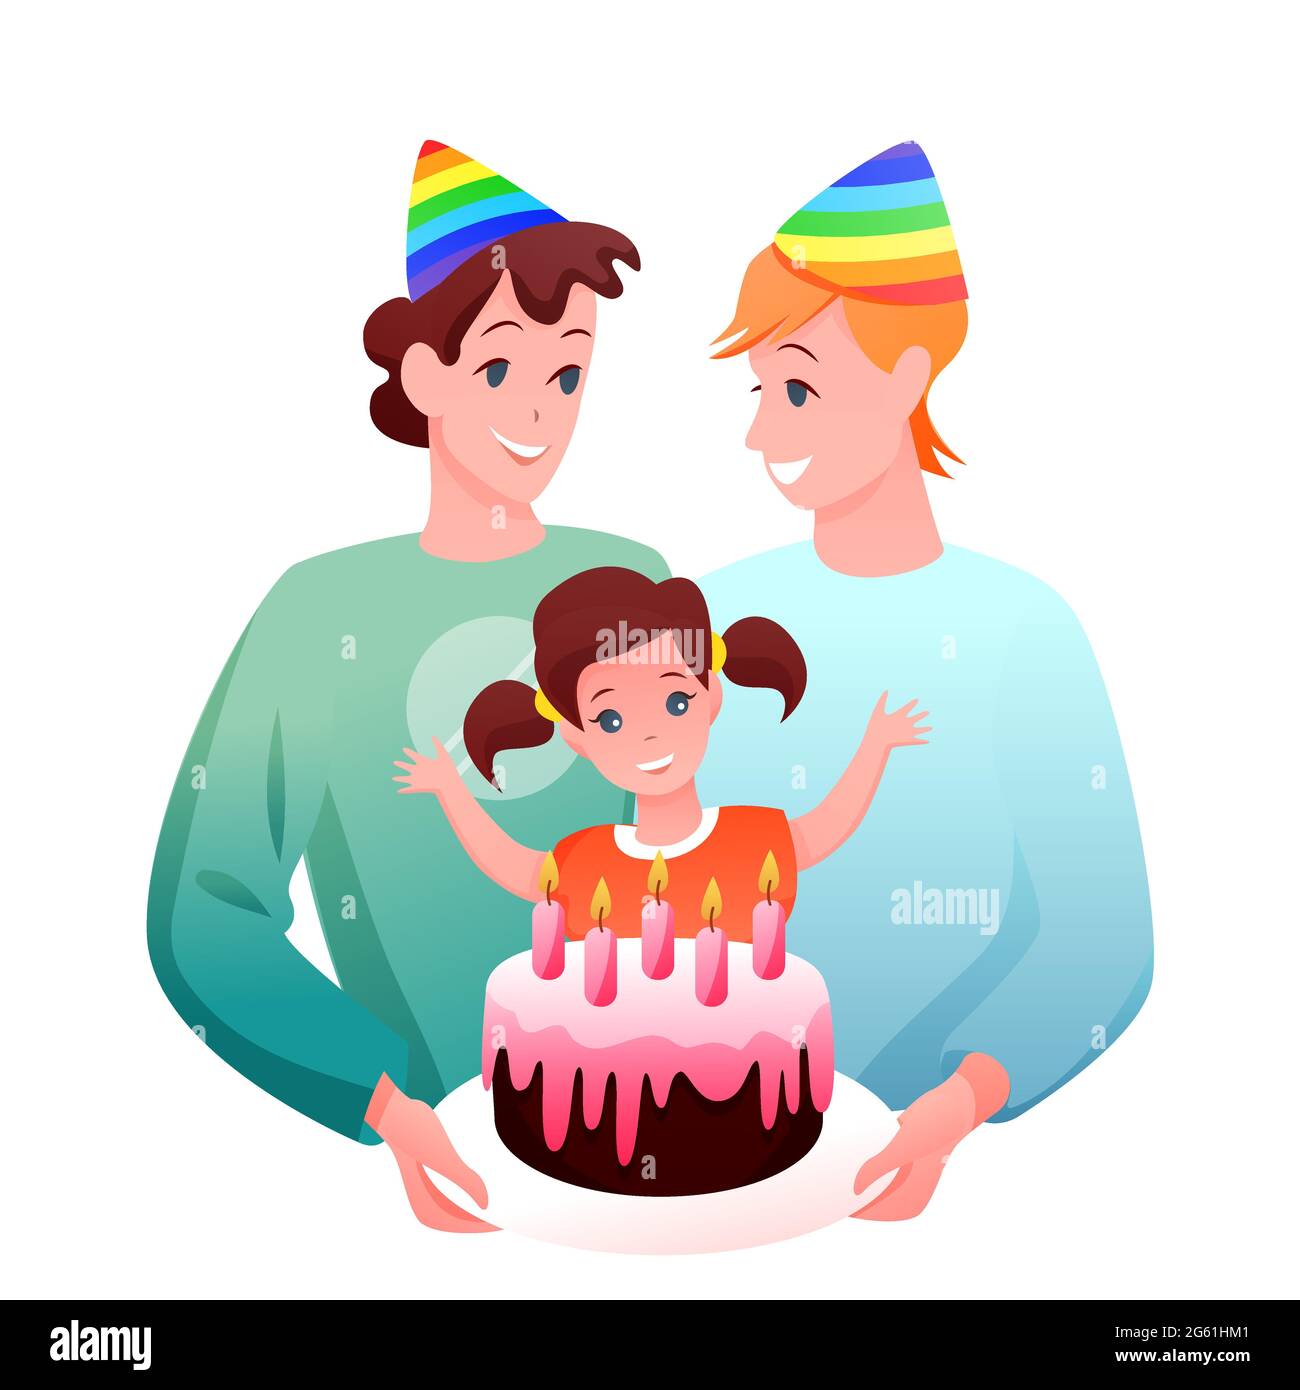 Gay LGBT famille célébrer illustration vectorielle, dessin animé plat heureux deux personnages de père gay célébrant l'anniversaire de fille isolée sur blanc Illustration de Vecteur